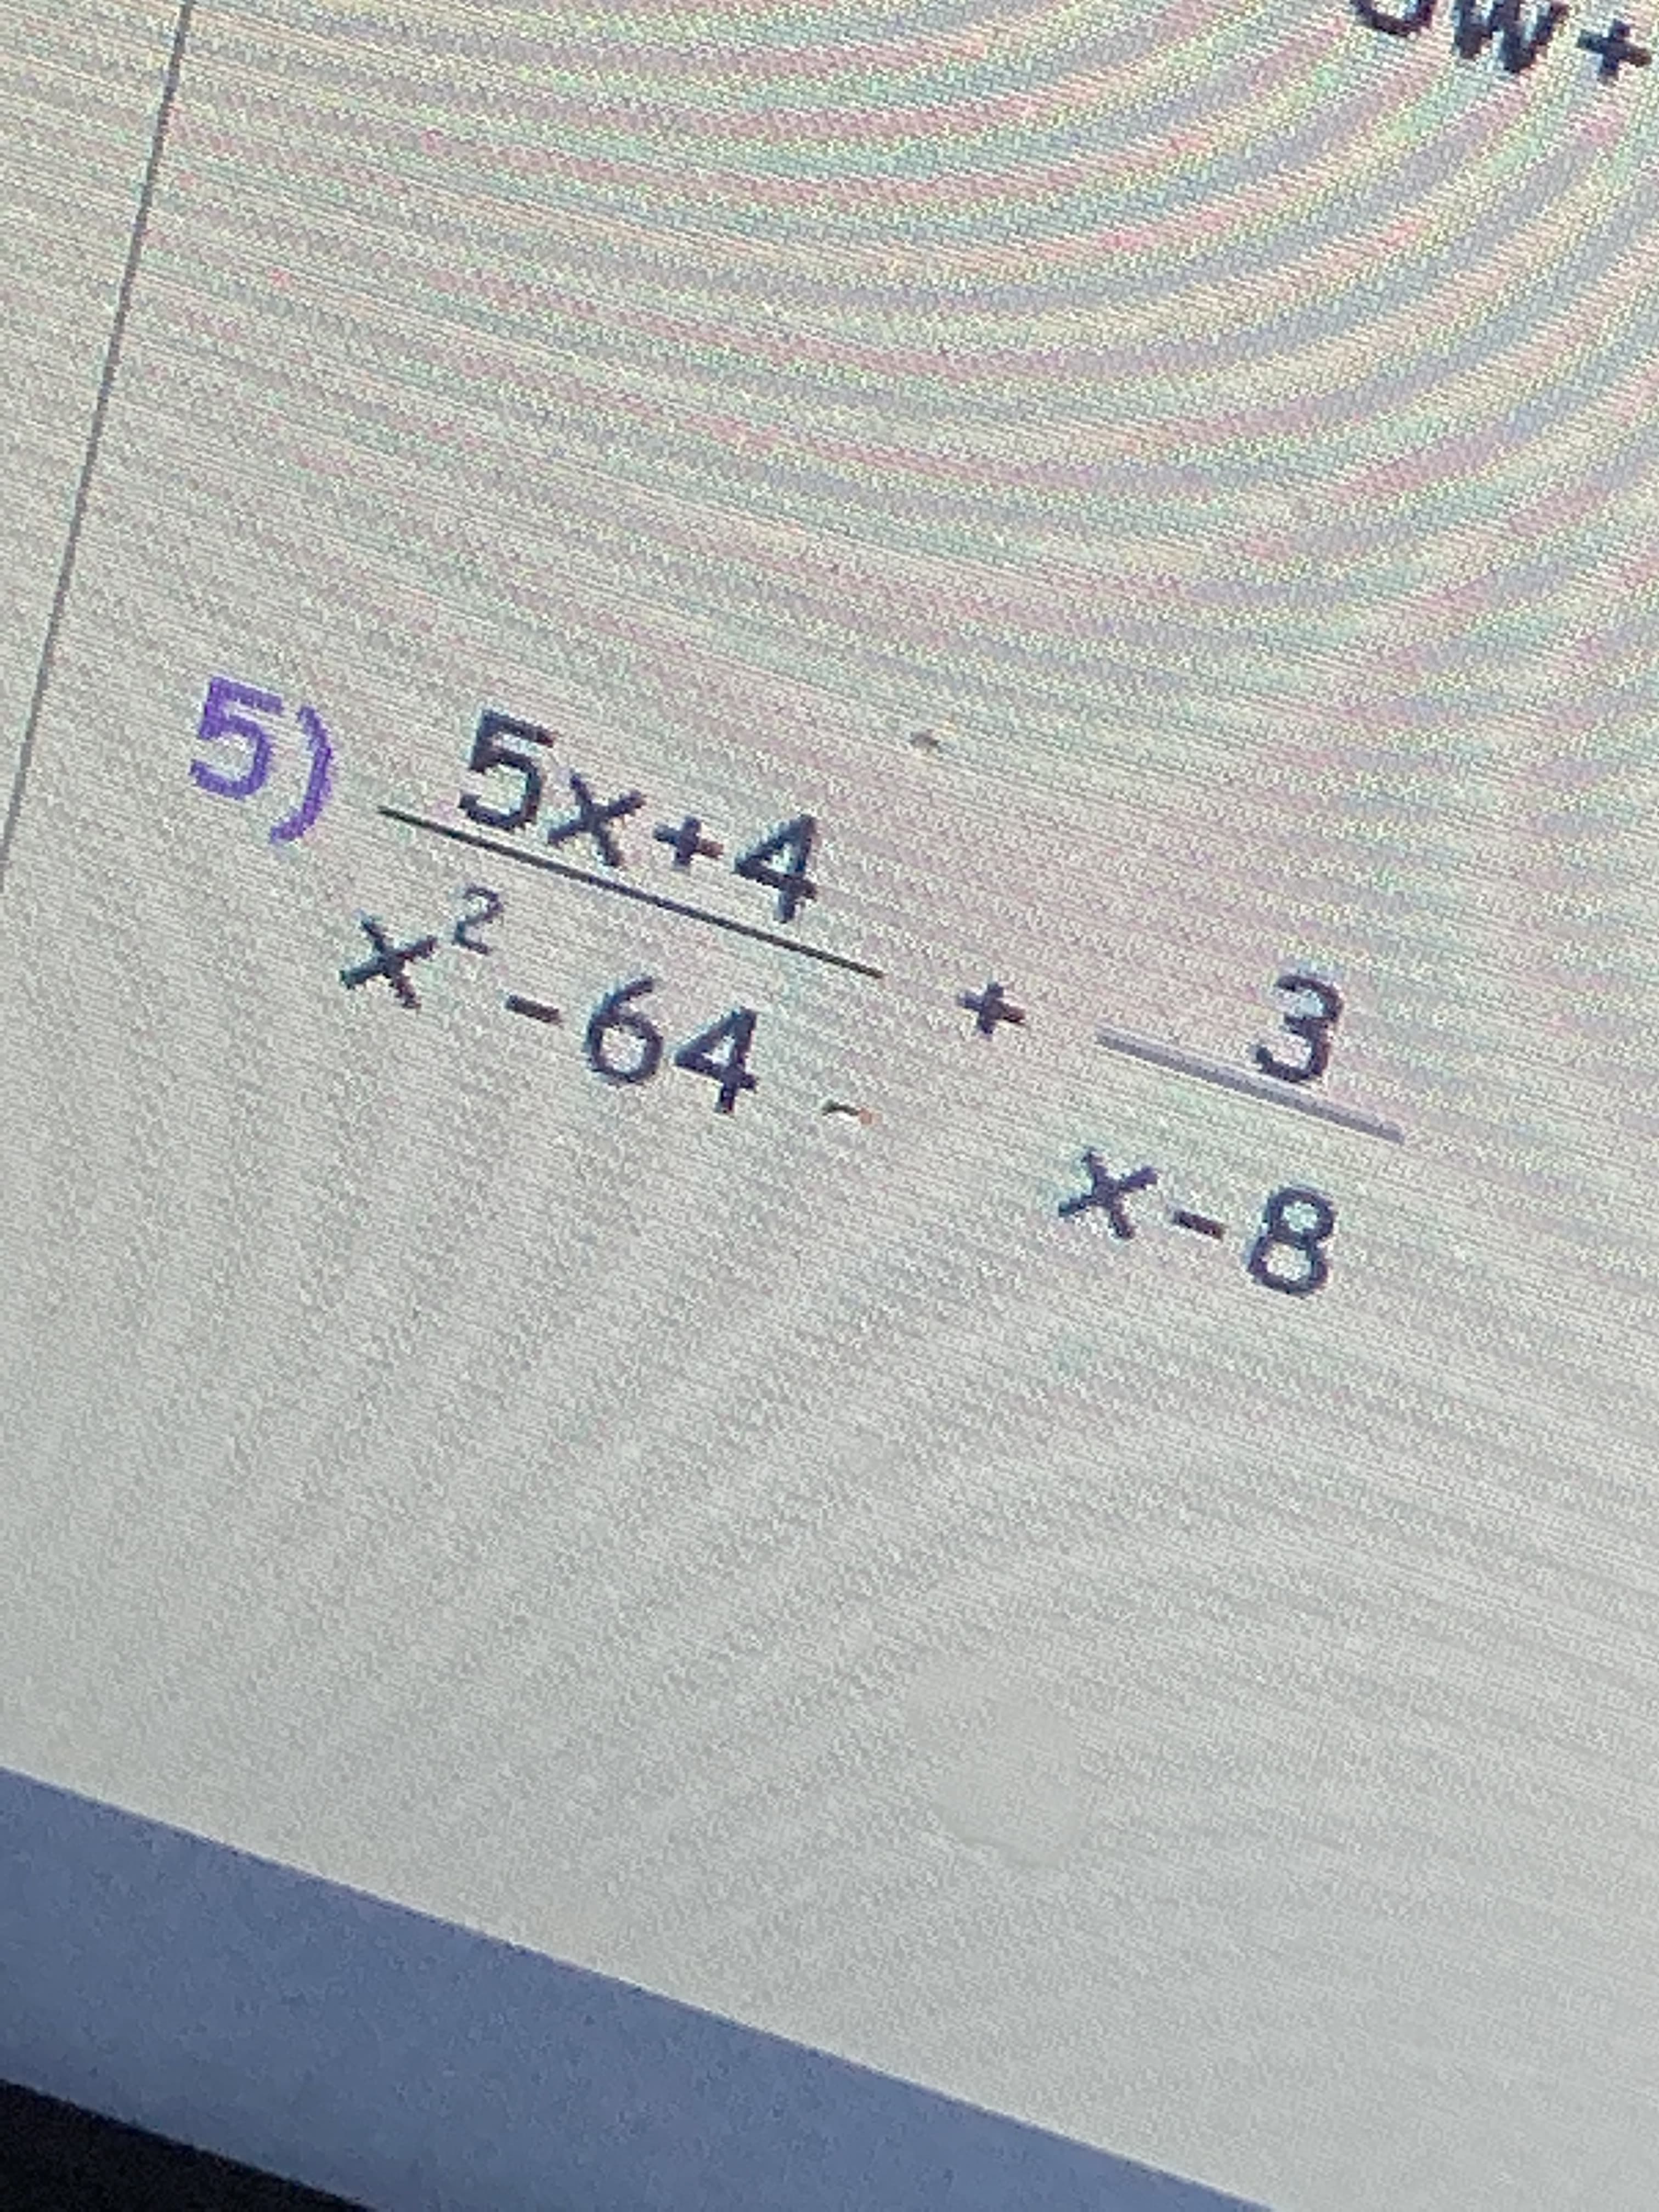 5x+4
x´-64
3
X-8
